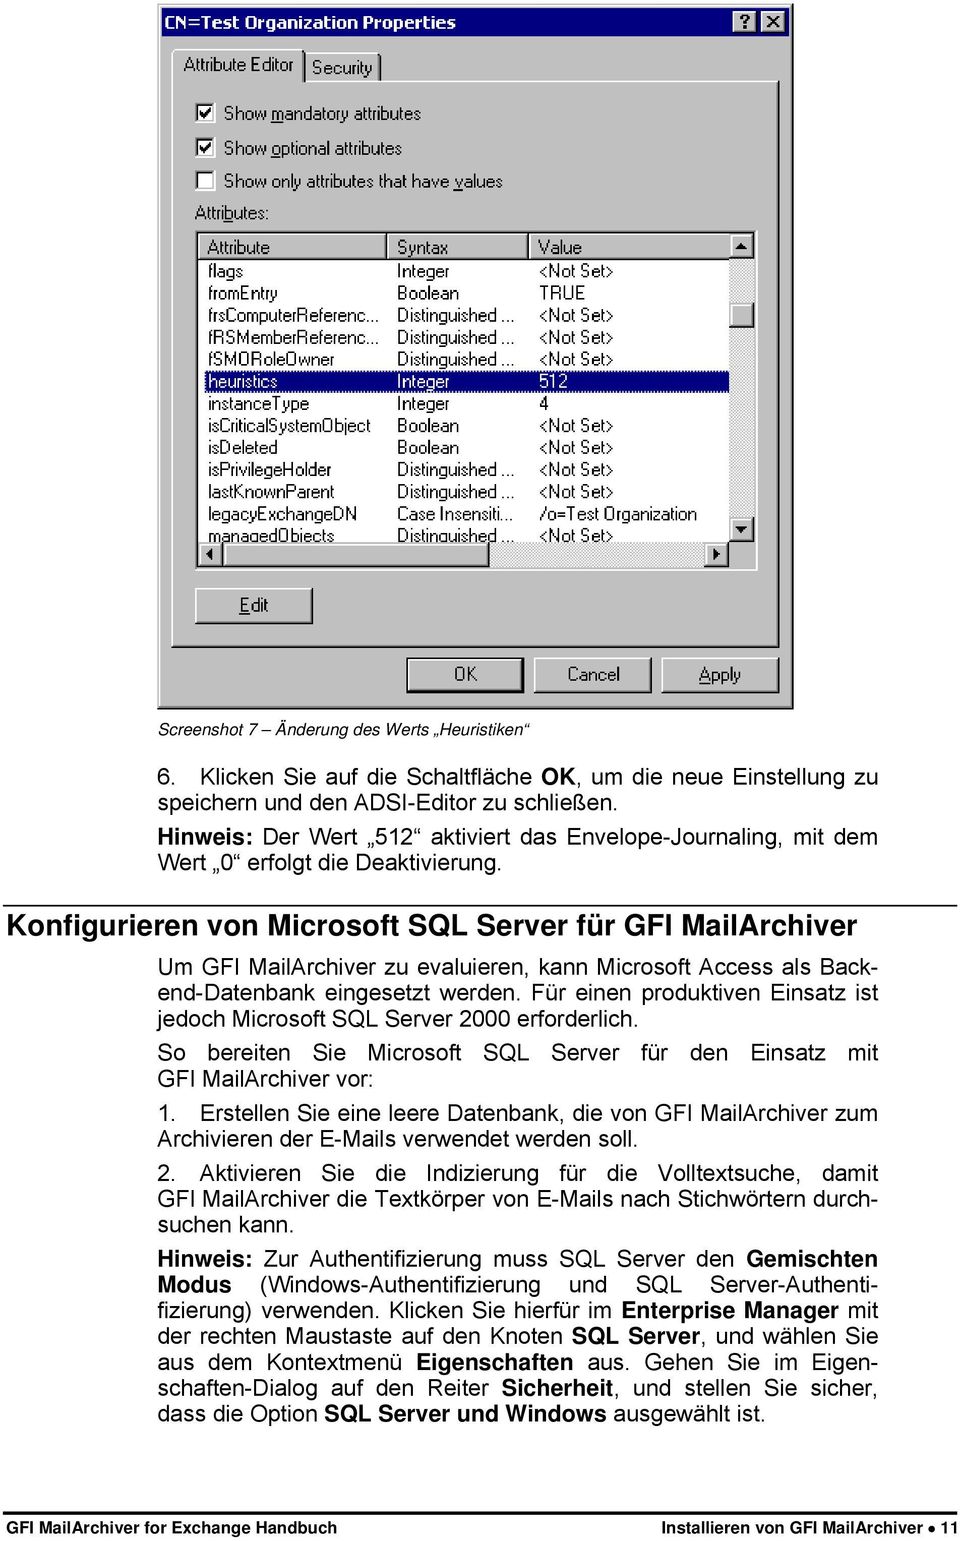 Konfigurieren von Microsoft SQL Server für GFI MailArchiver Um GFI MailArchiver zu evaluieren, kann Microsoft Access als Backend-Datenbank eingesetzt werden.